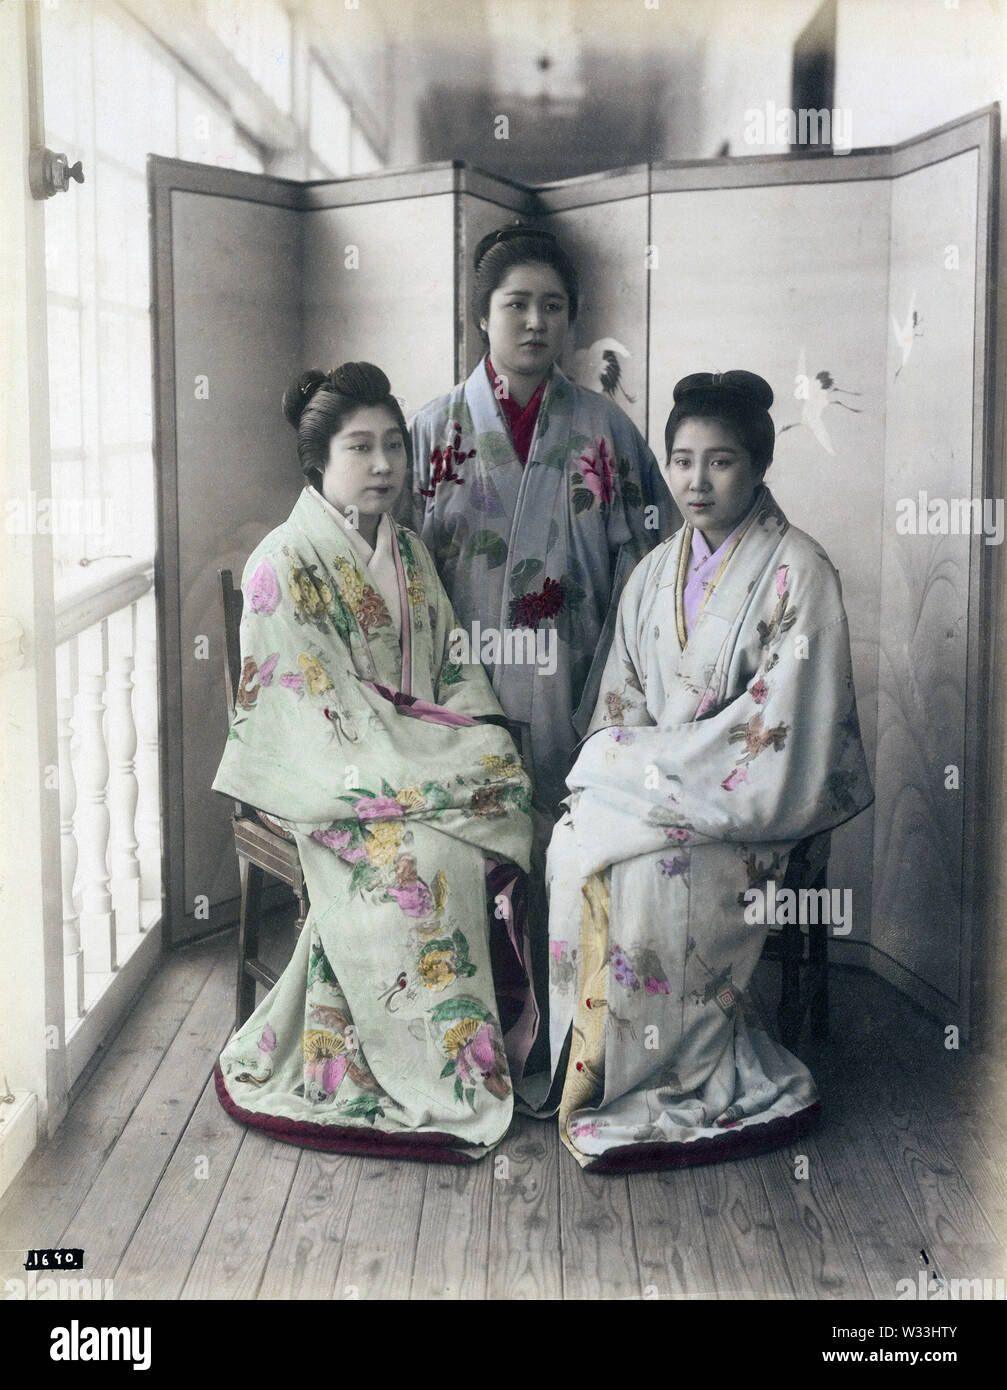 [1890s Japan - japanische Prostituierte] - japanische Prostituierte im Kimono und traditionellen Frisuren. 19 Vintage albumen Foto. Stockfoto